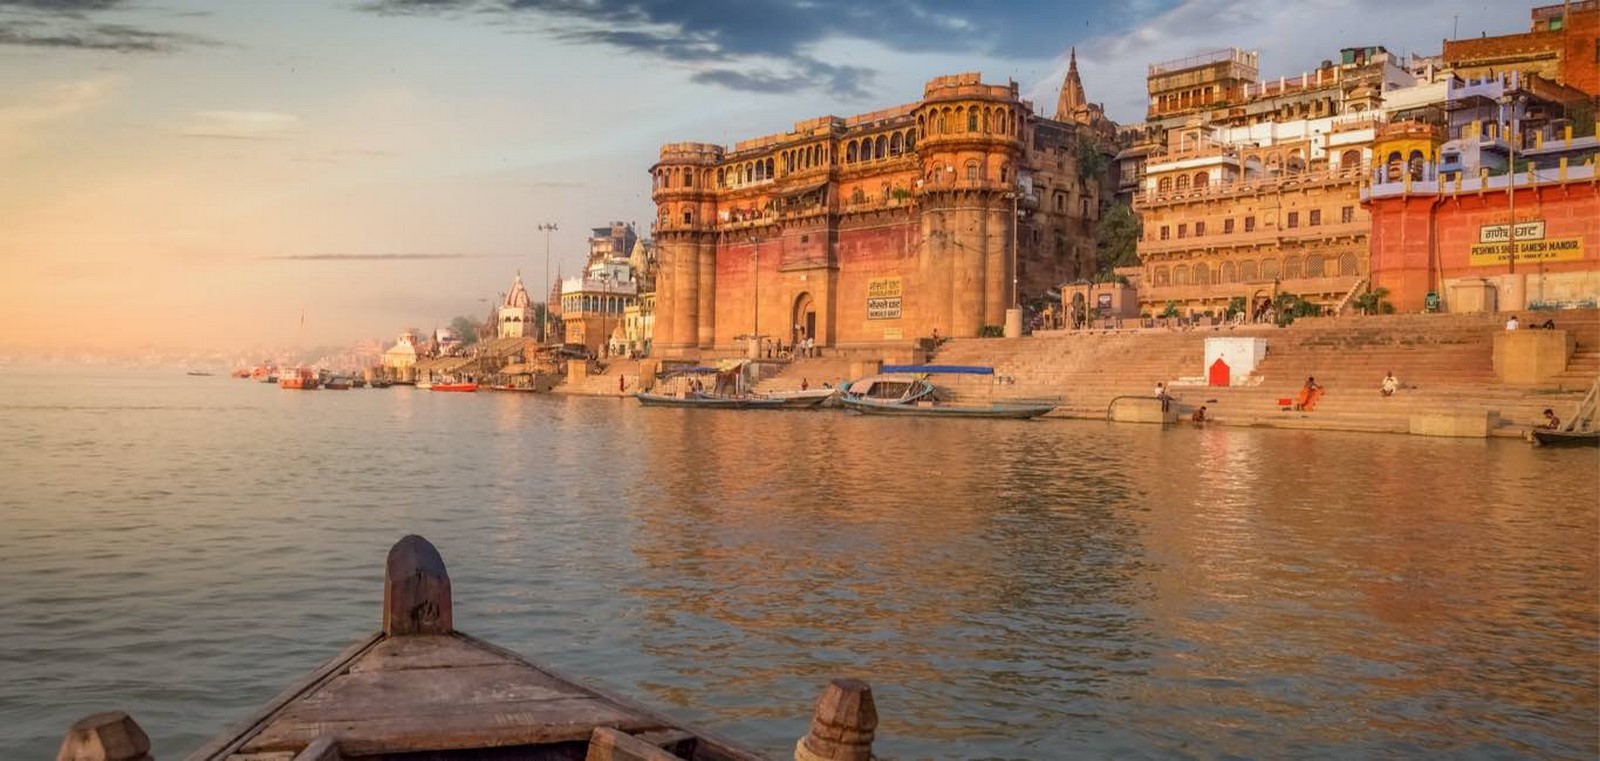 The Holy city of Varanasi - Sheet2